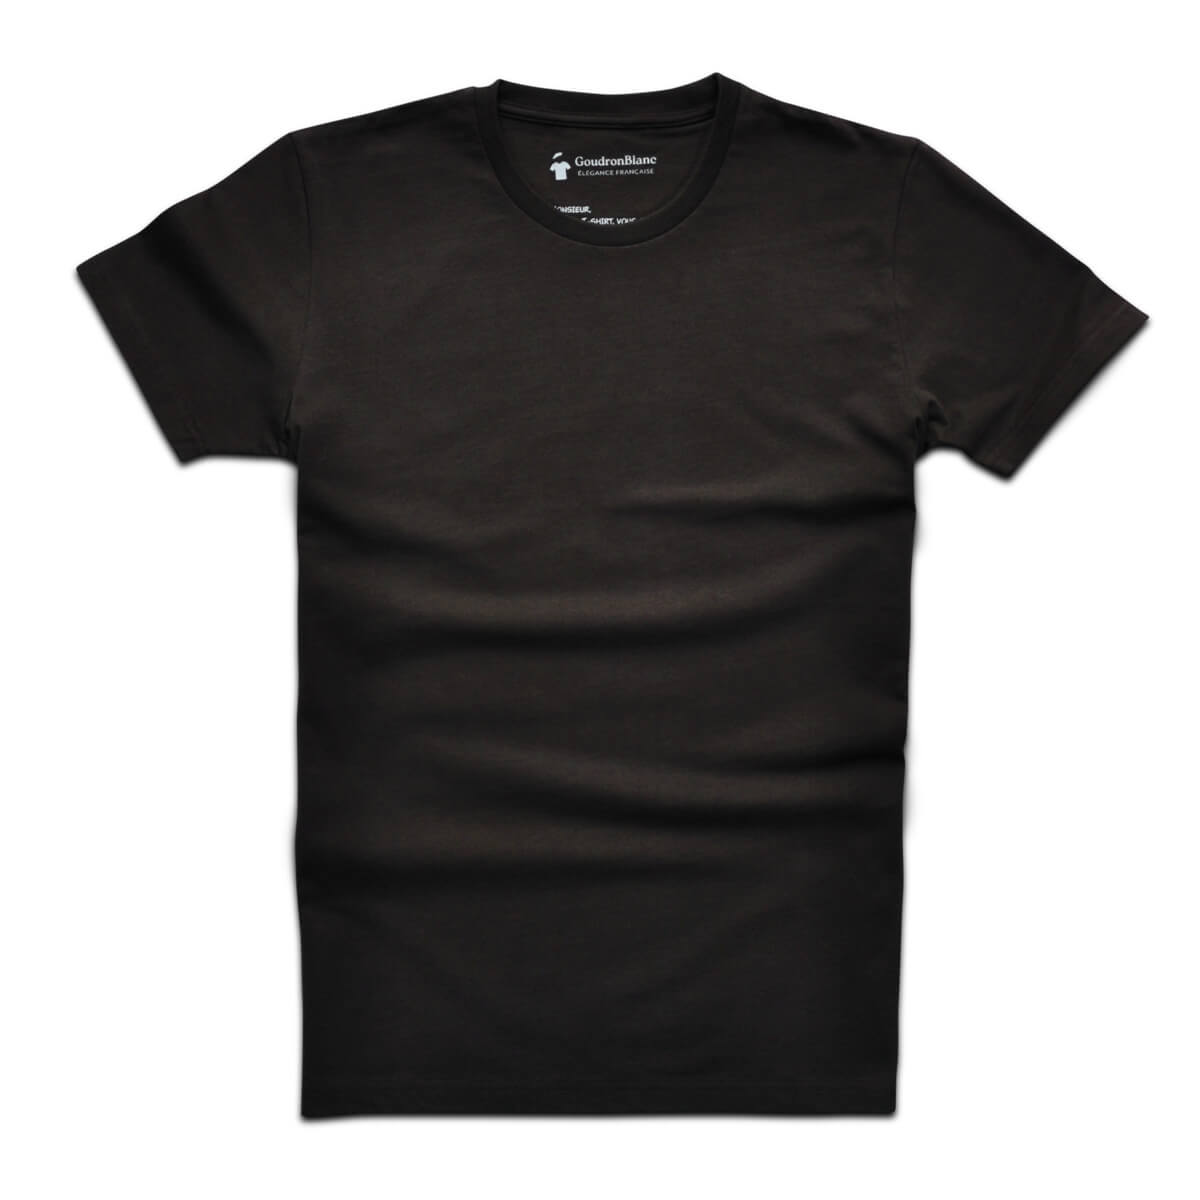 T-shirt col rond marron espresso - GoudronBlanc